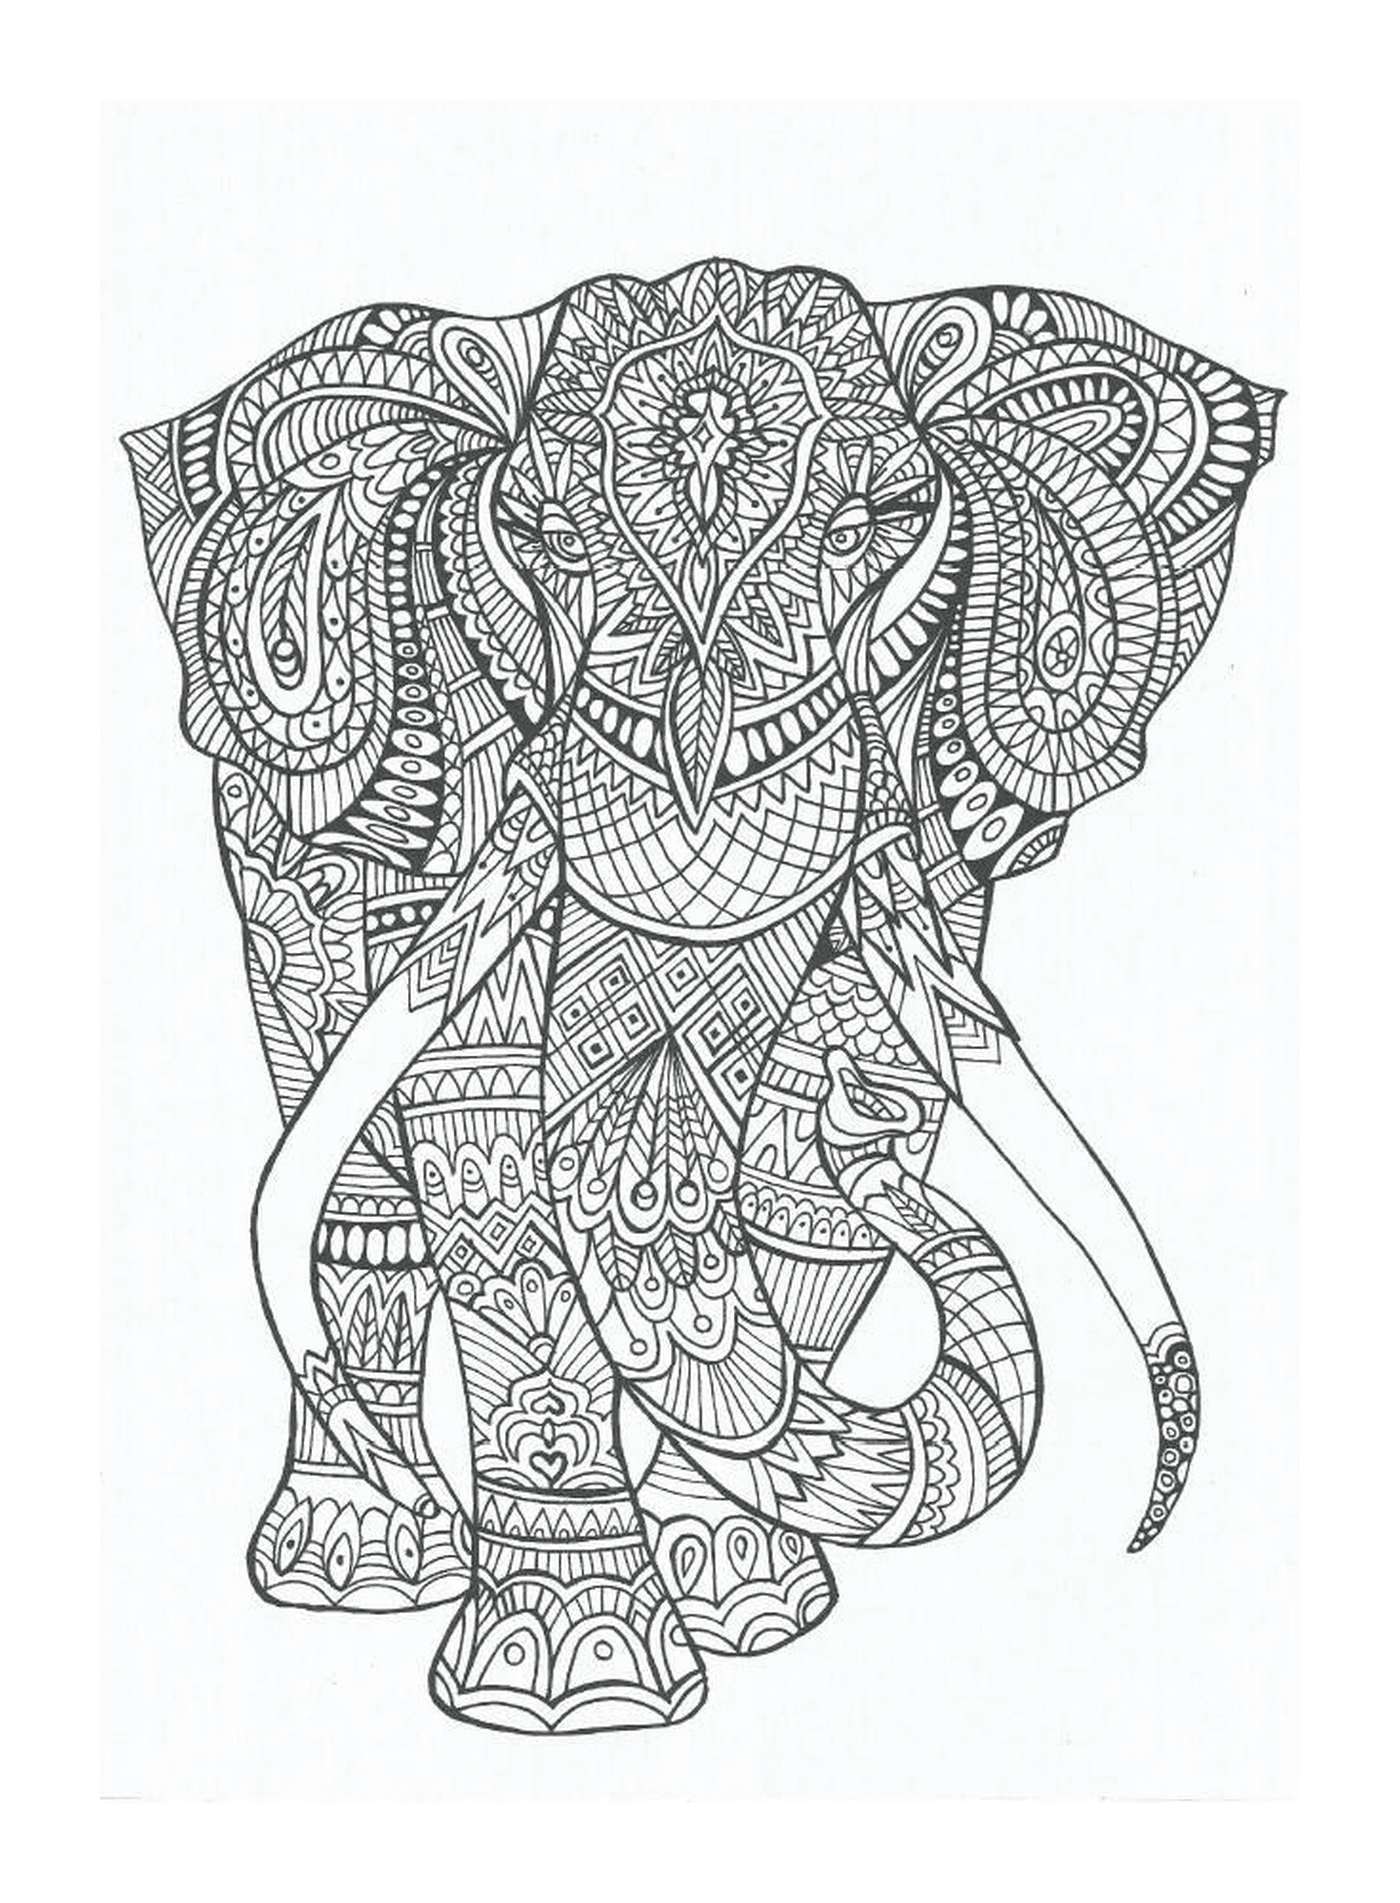  Ein Elefant mit Mandalas verziert 